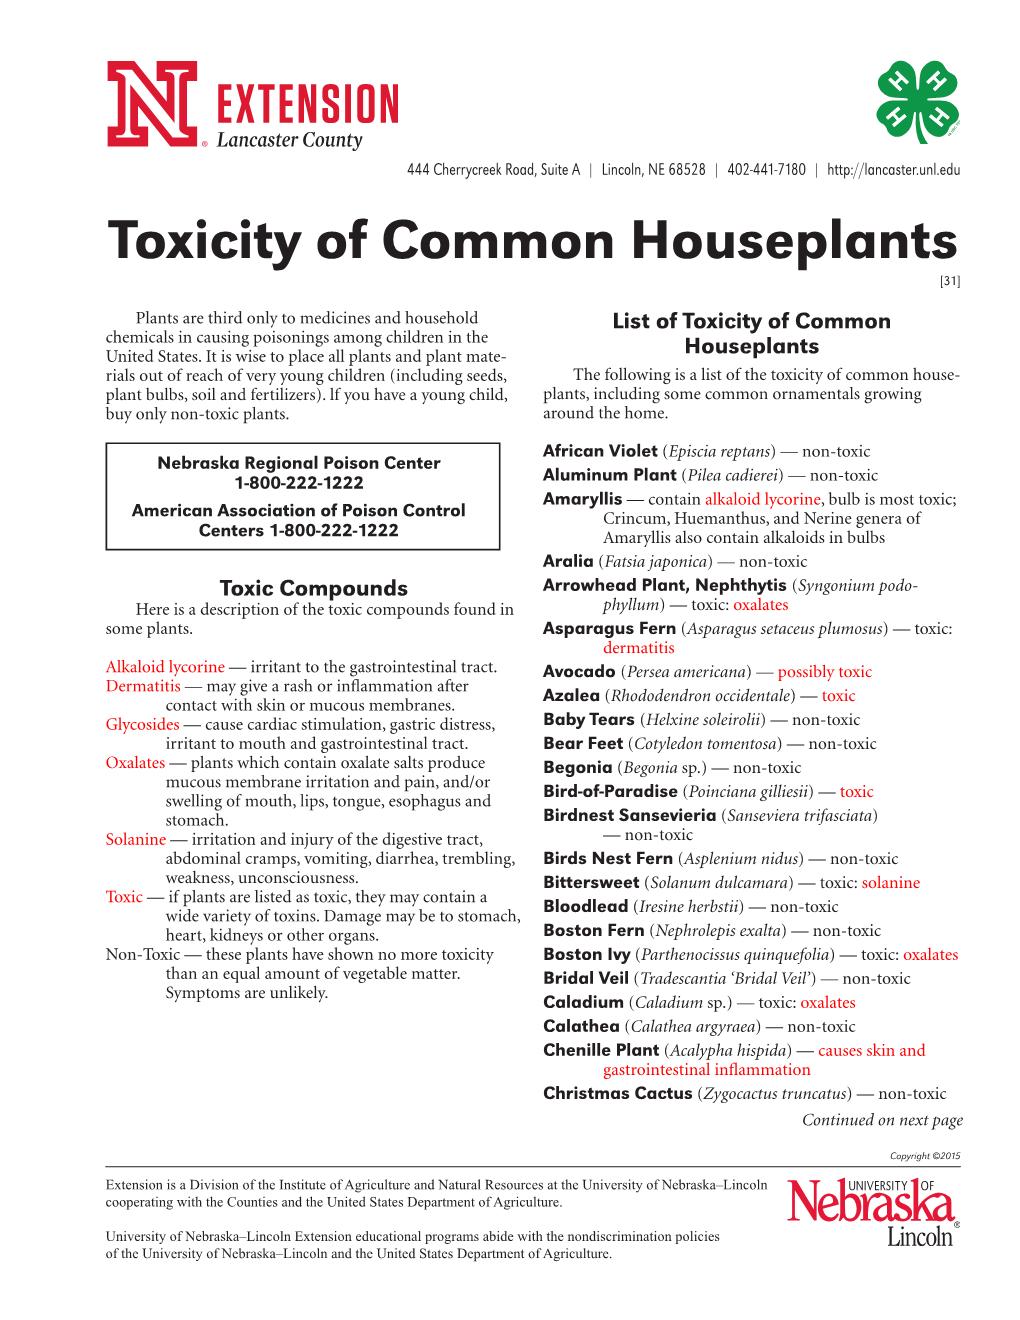 Toxicity of Common Houseplants